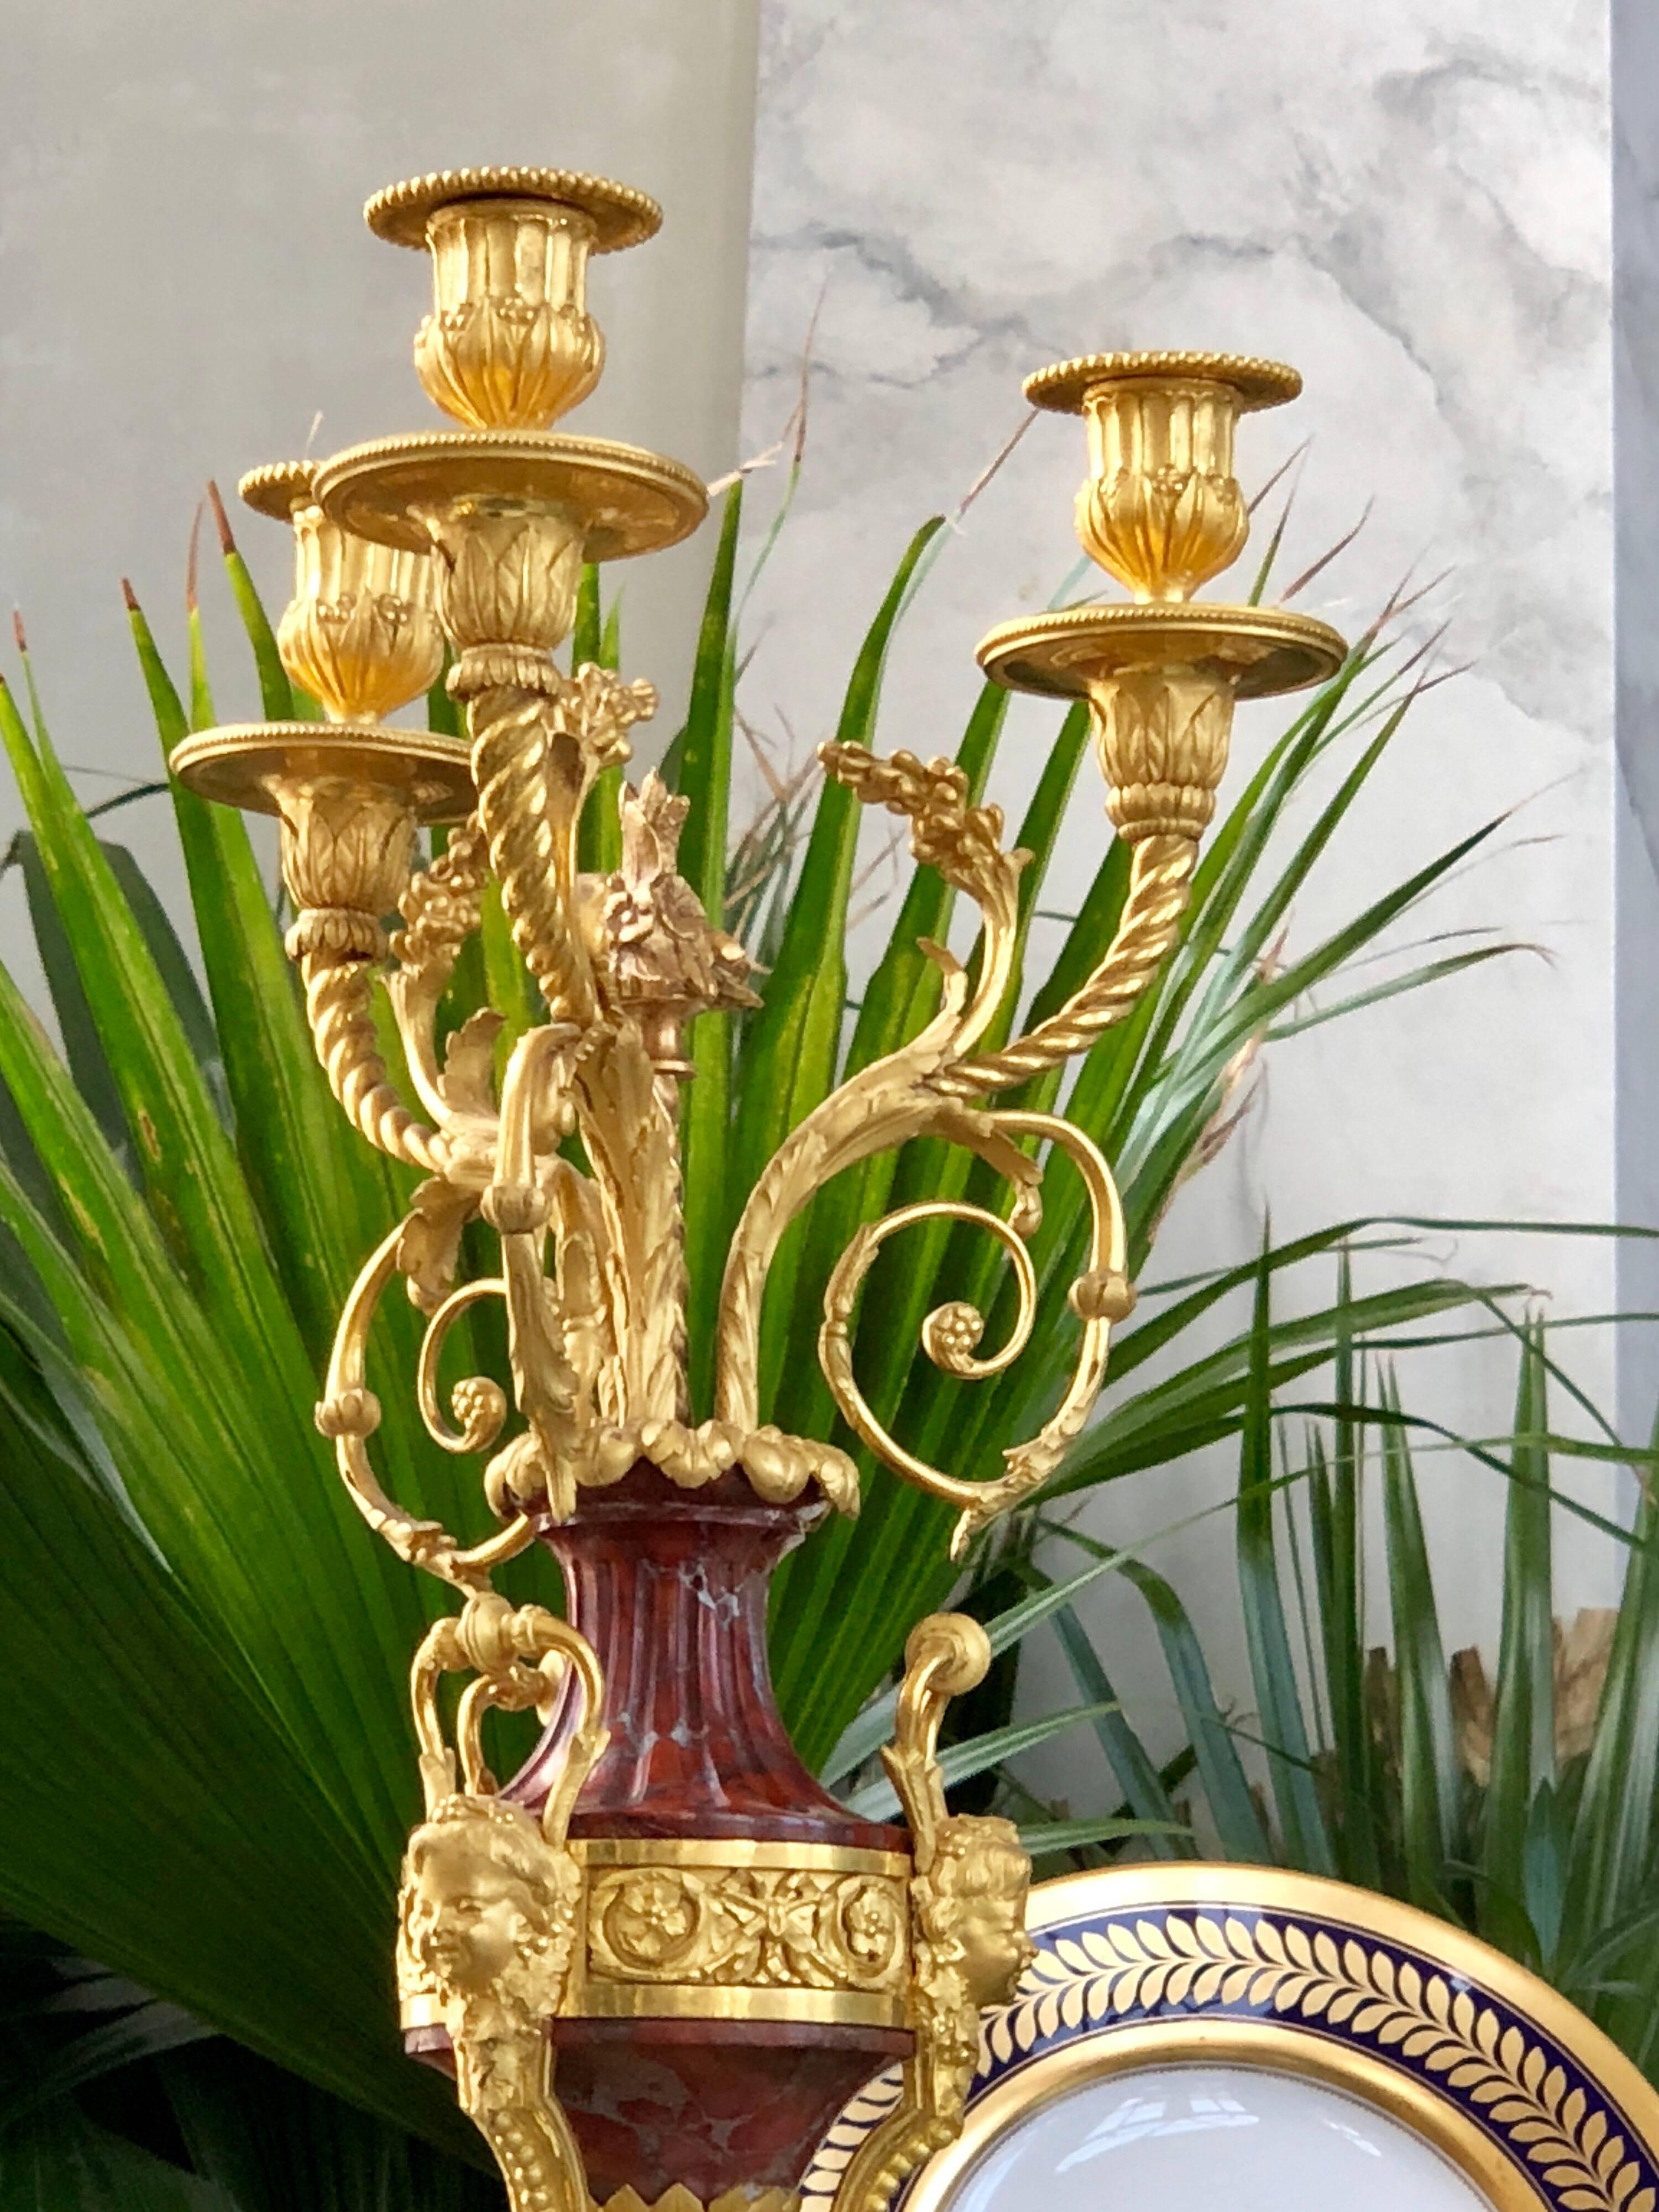 Exquise paire de tables de style Louis XVI en marbre rouge et bronze doré bicolore. Ces objets sont de la plus haute qualité et exécution et sont probablement attribuables à l'un des meilleurs bronziers de France.